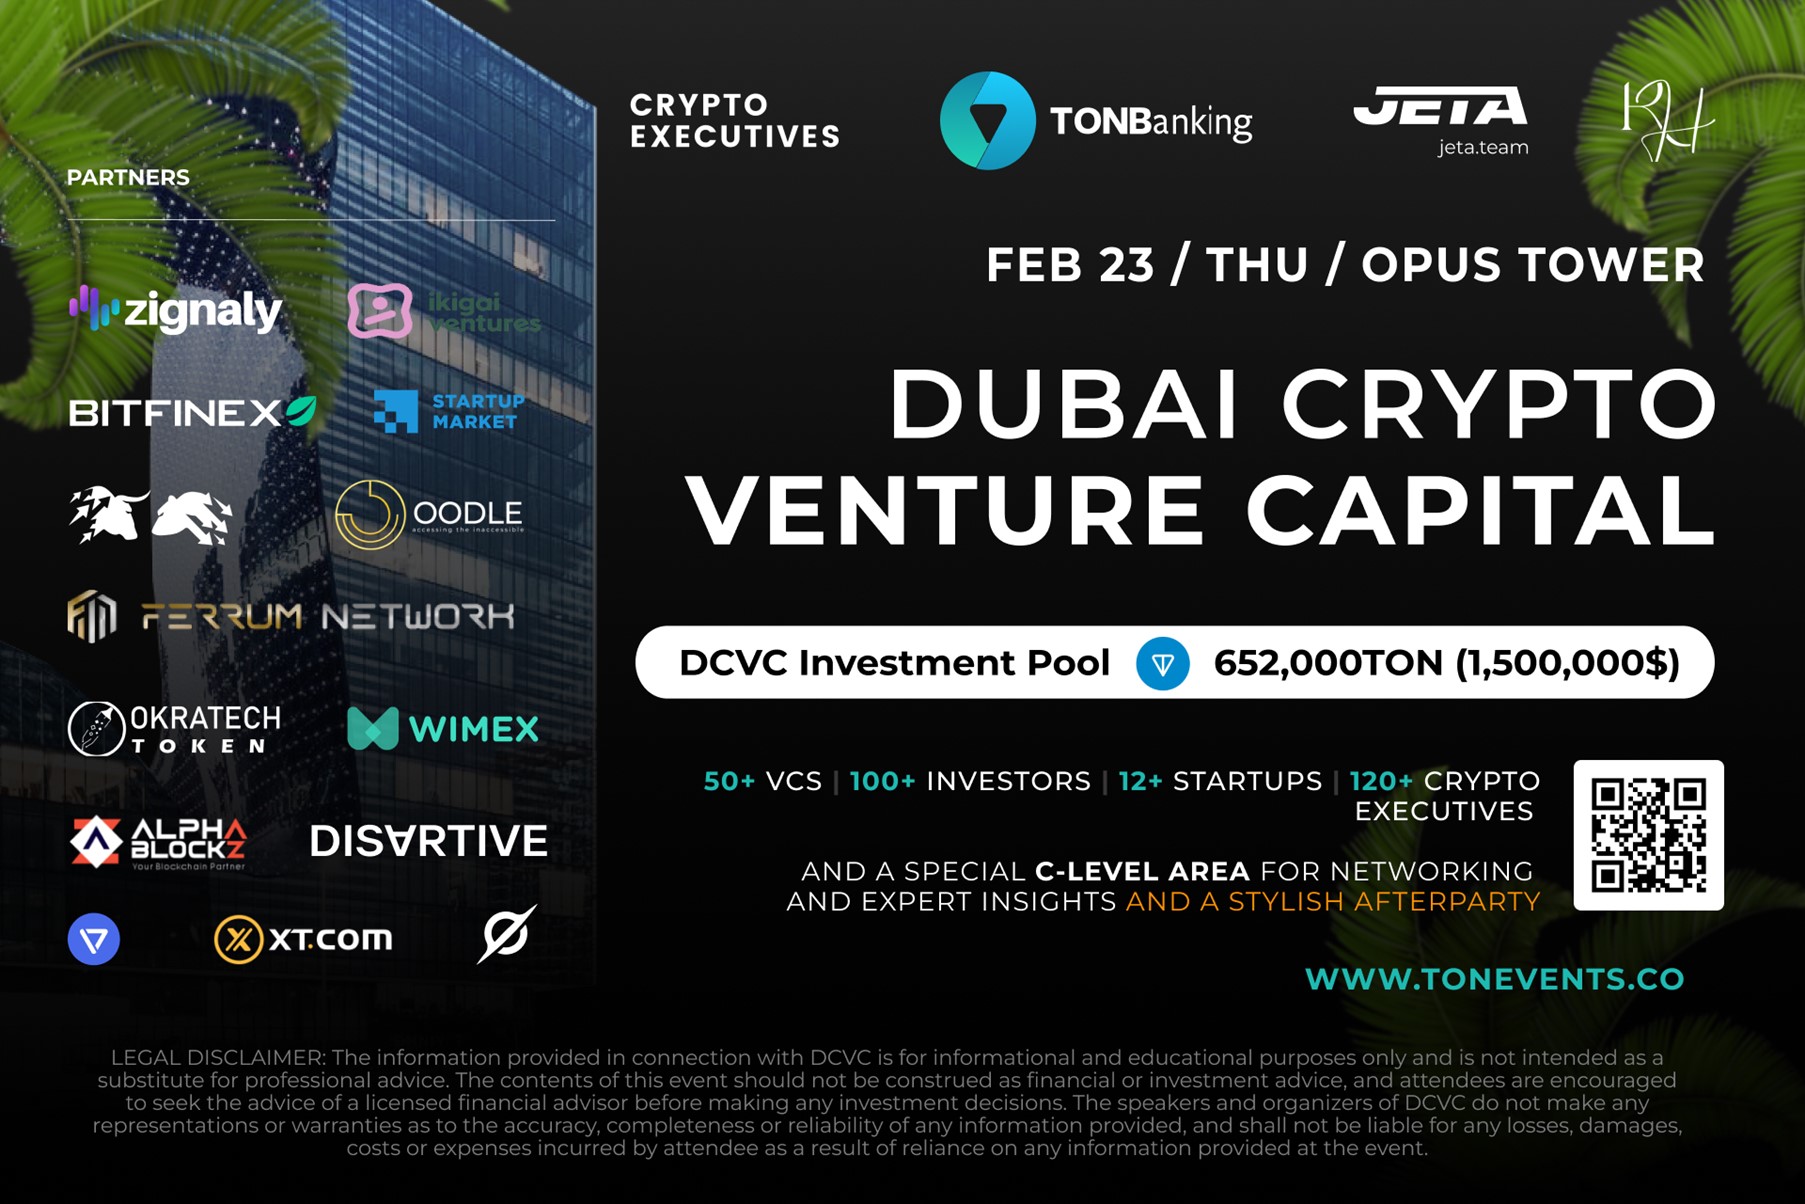 Dubai Crypto Venture Capital Thursdays are back on February 23 — now